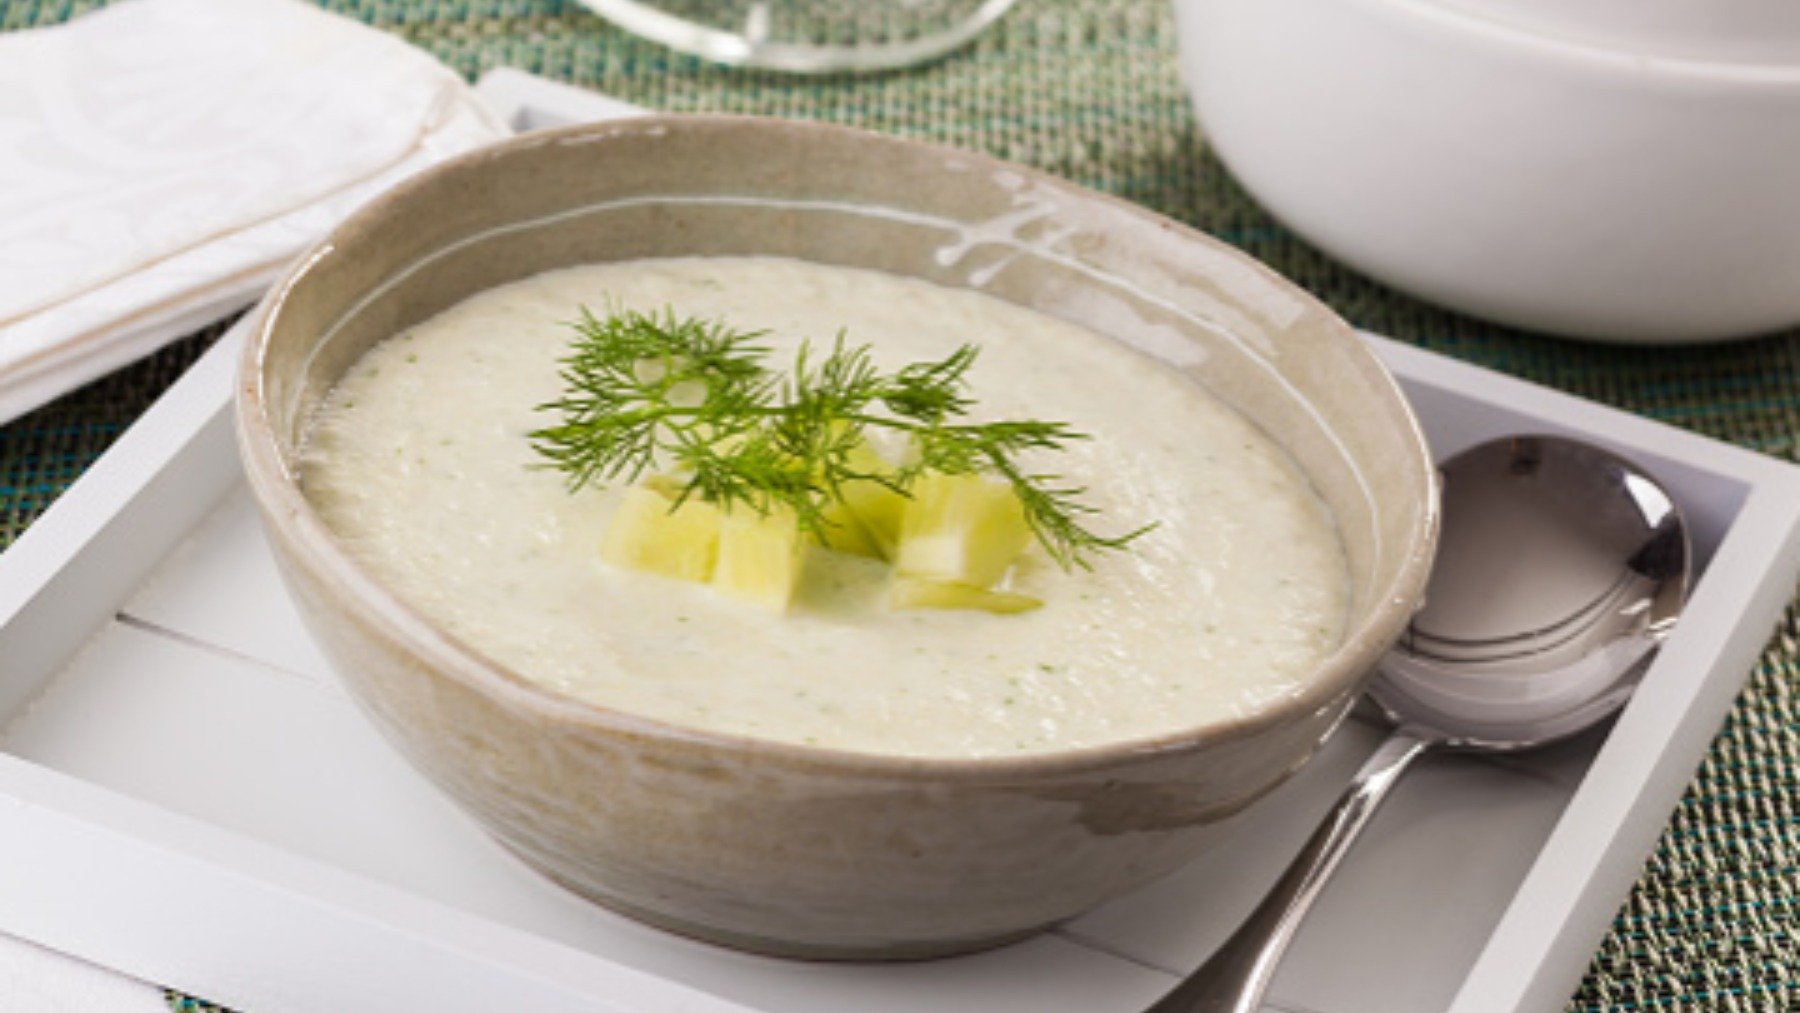 Sopa fría libanesa de pepino y menta, la receta de cuchara más refrescante del verano 4